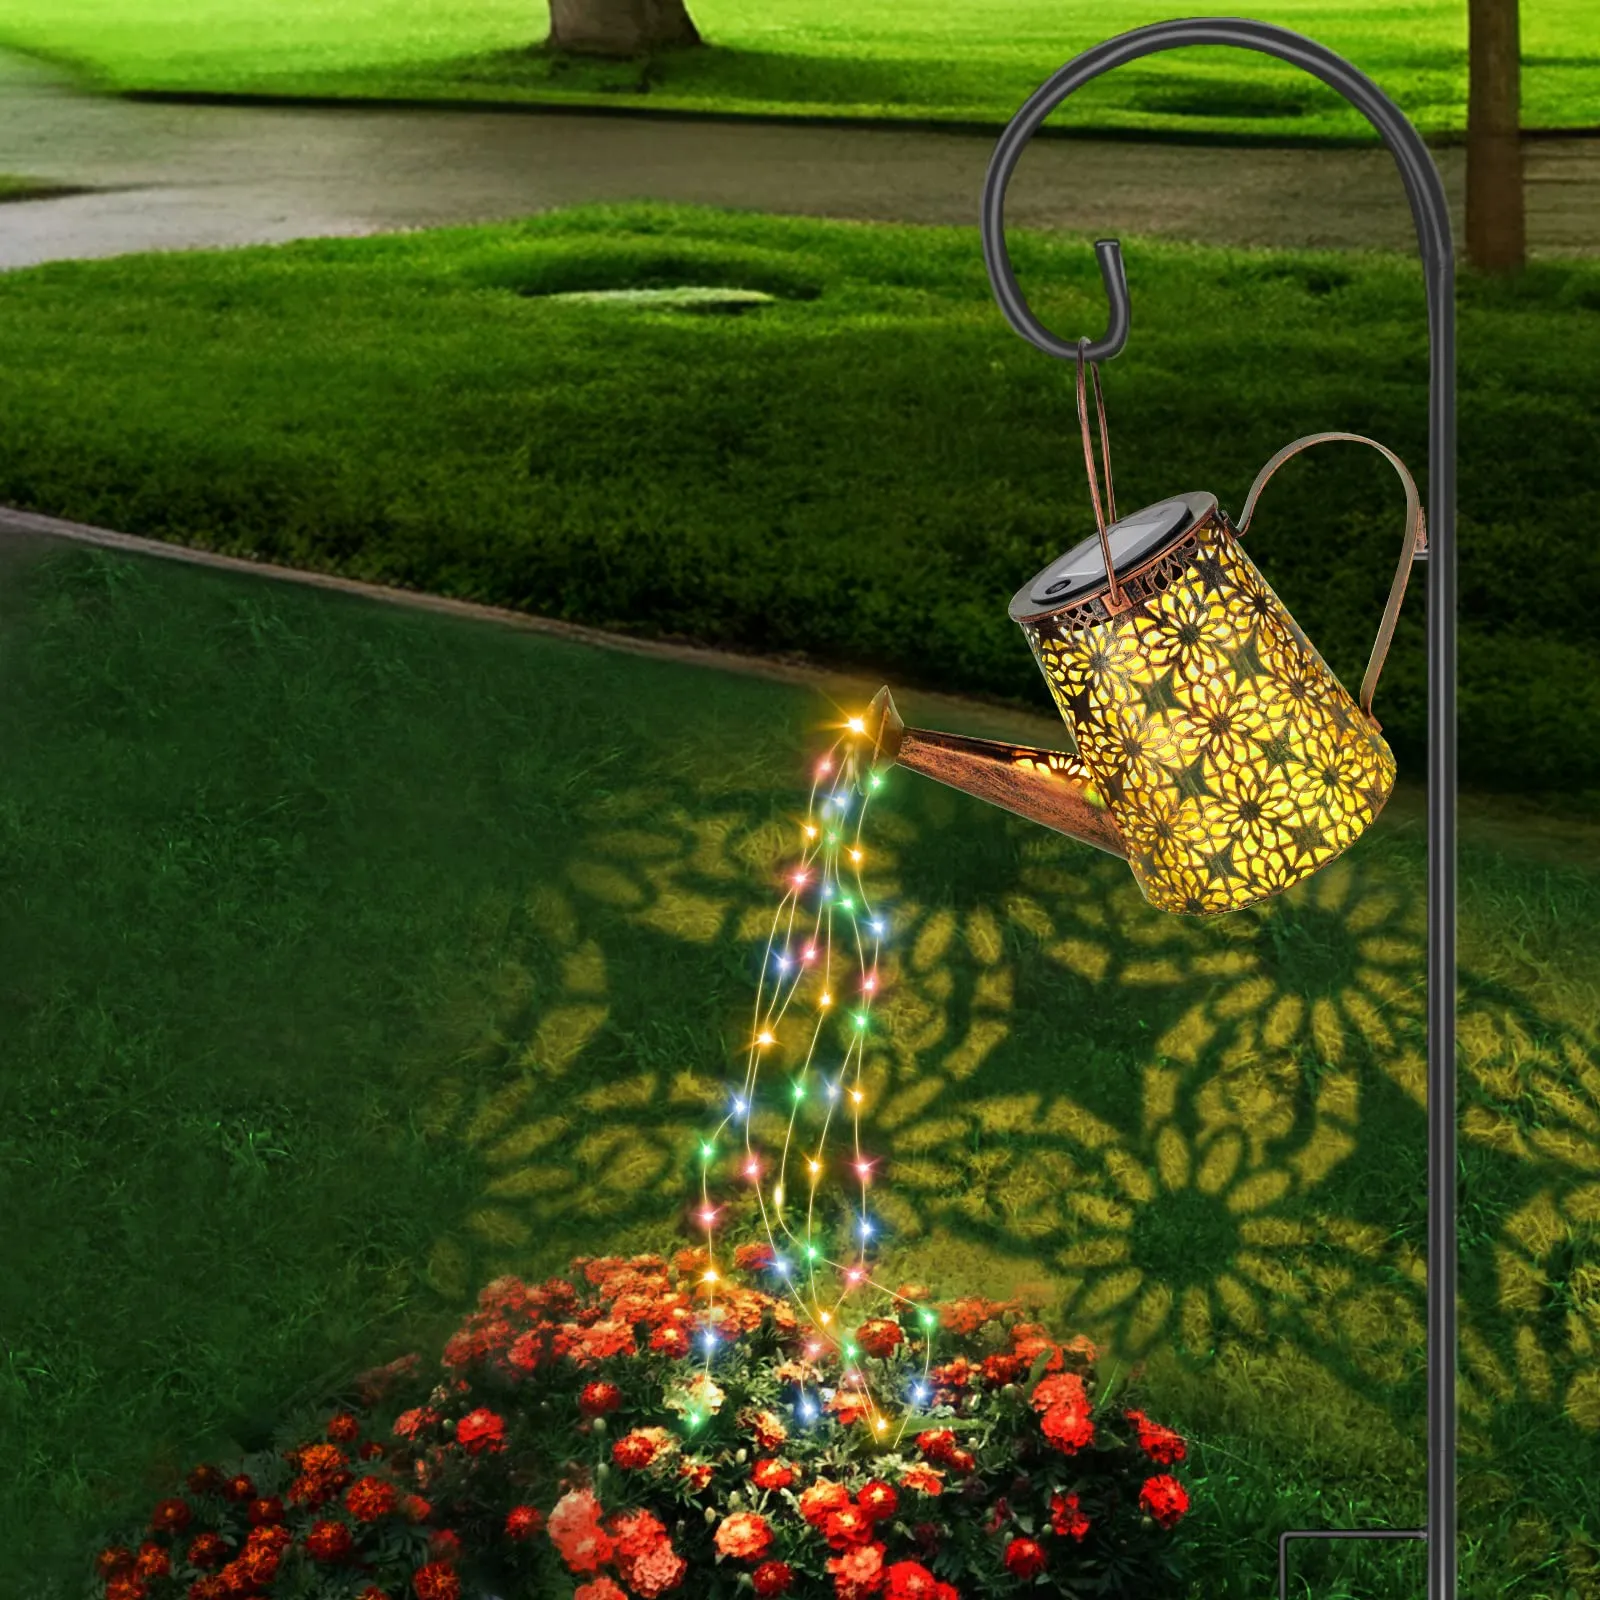 Ley de cascada solar Lámparas Decoraciones de jardín Riego al aire libre con luces en cascada que cuelgan la decoración del jardín impermeable para el exterior para el exterior adecuado